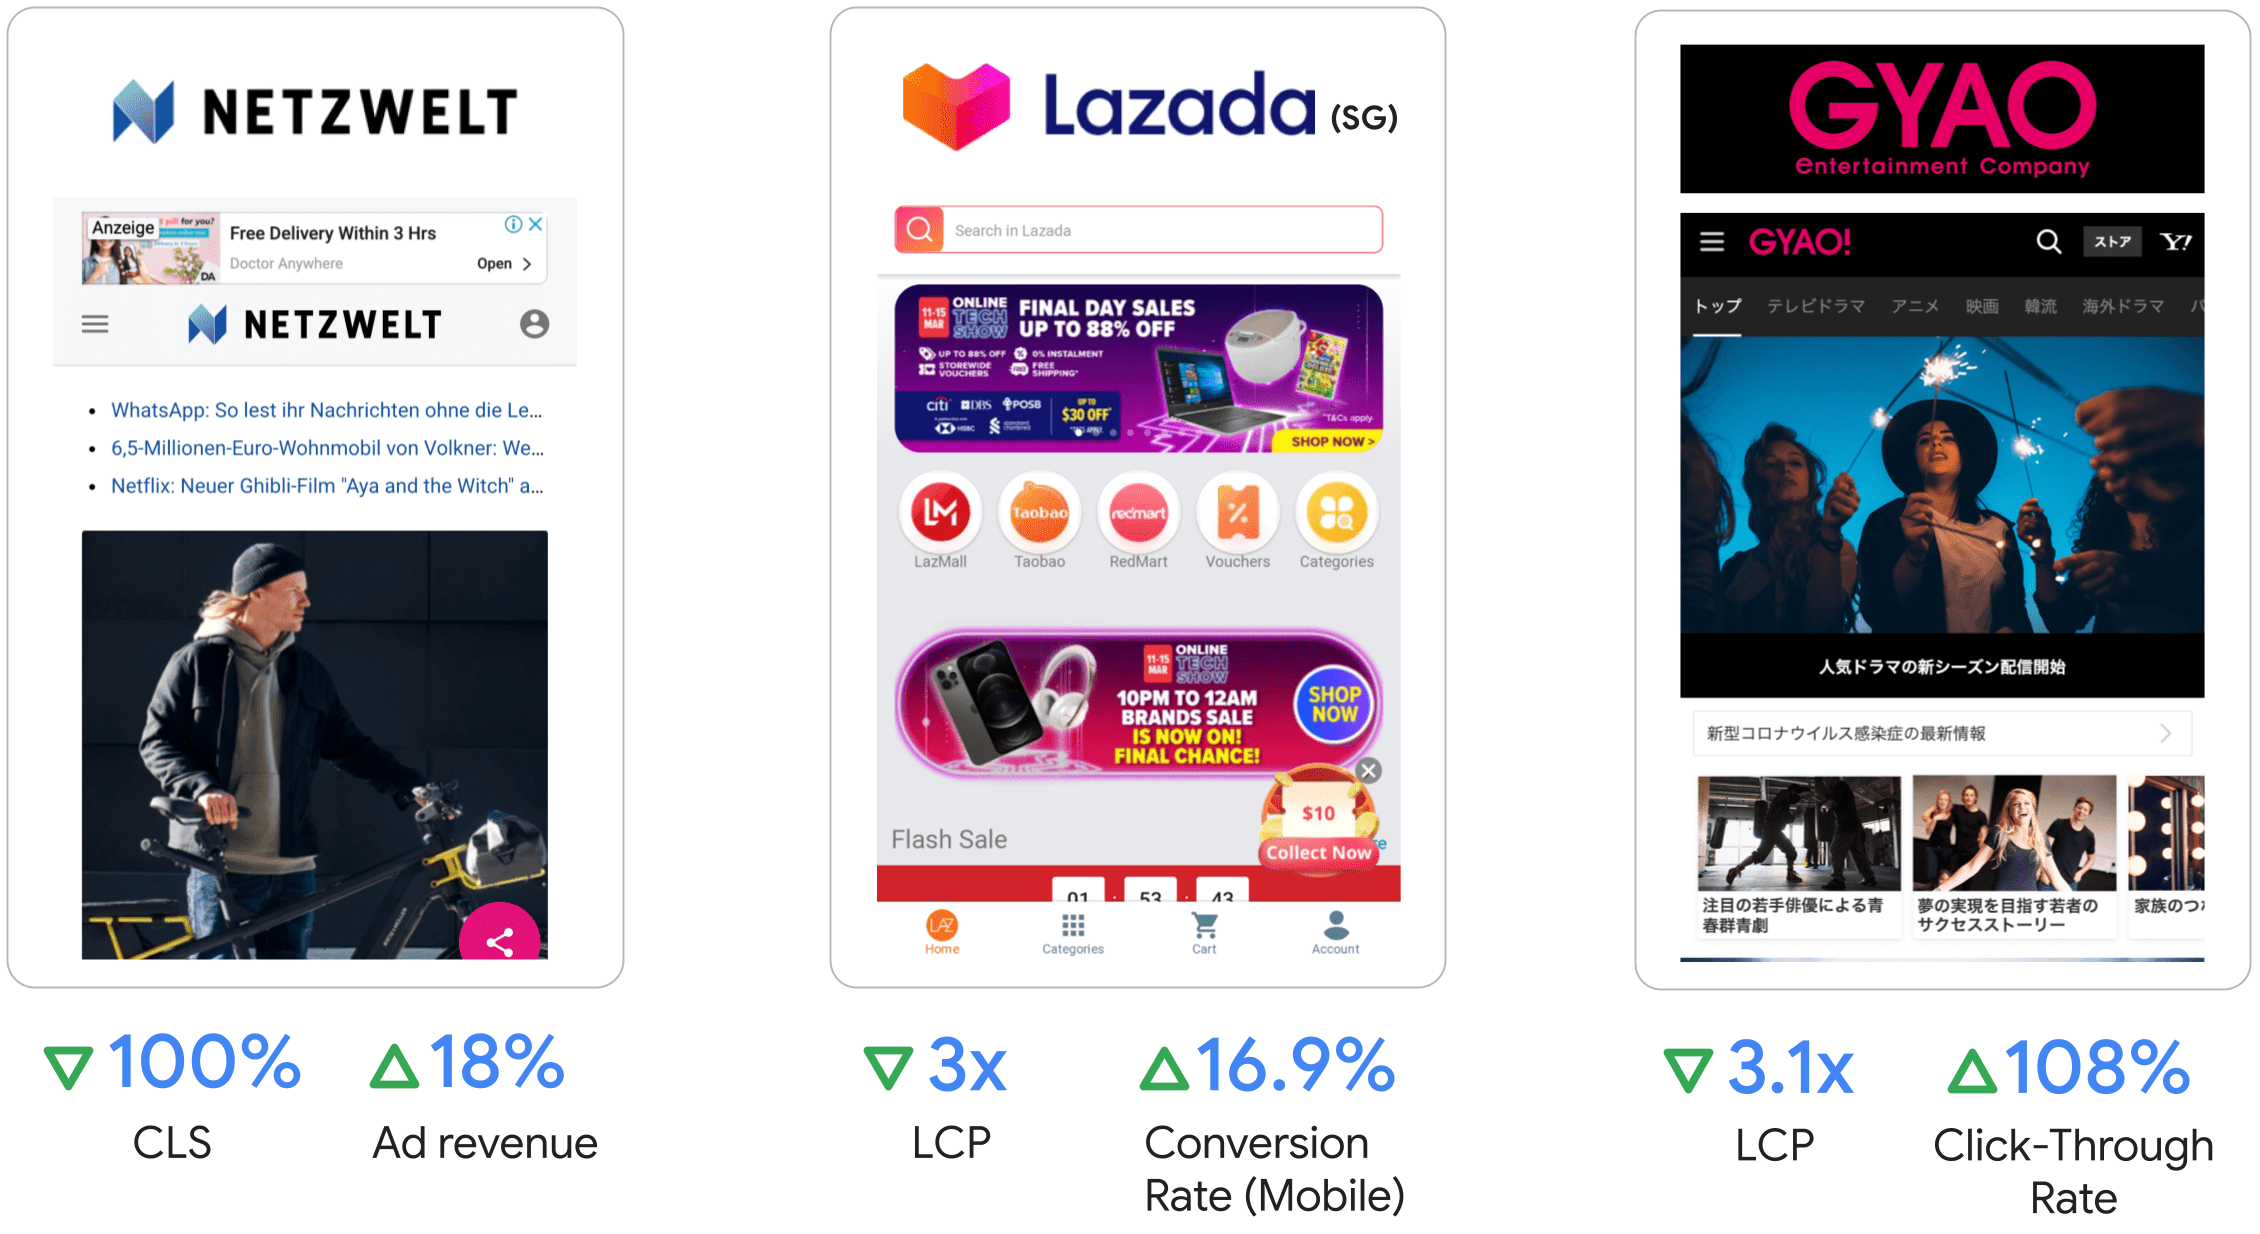 Netzwelt obtuvo un aumento del 18% en los ingresos publicitarios,
Lazada obtuvo un aumento del 18% en el LCP y un incremento del 16.9% en el porcentaje de conversiones en dispositivos móviles,
GYAO observó un LCP 3.1 veces y una mejora del 108% en la tasa de clics.